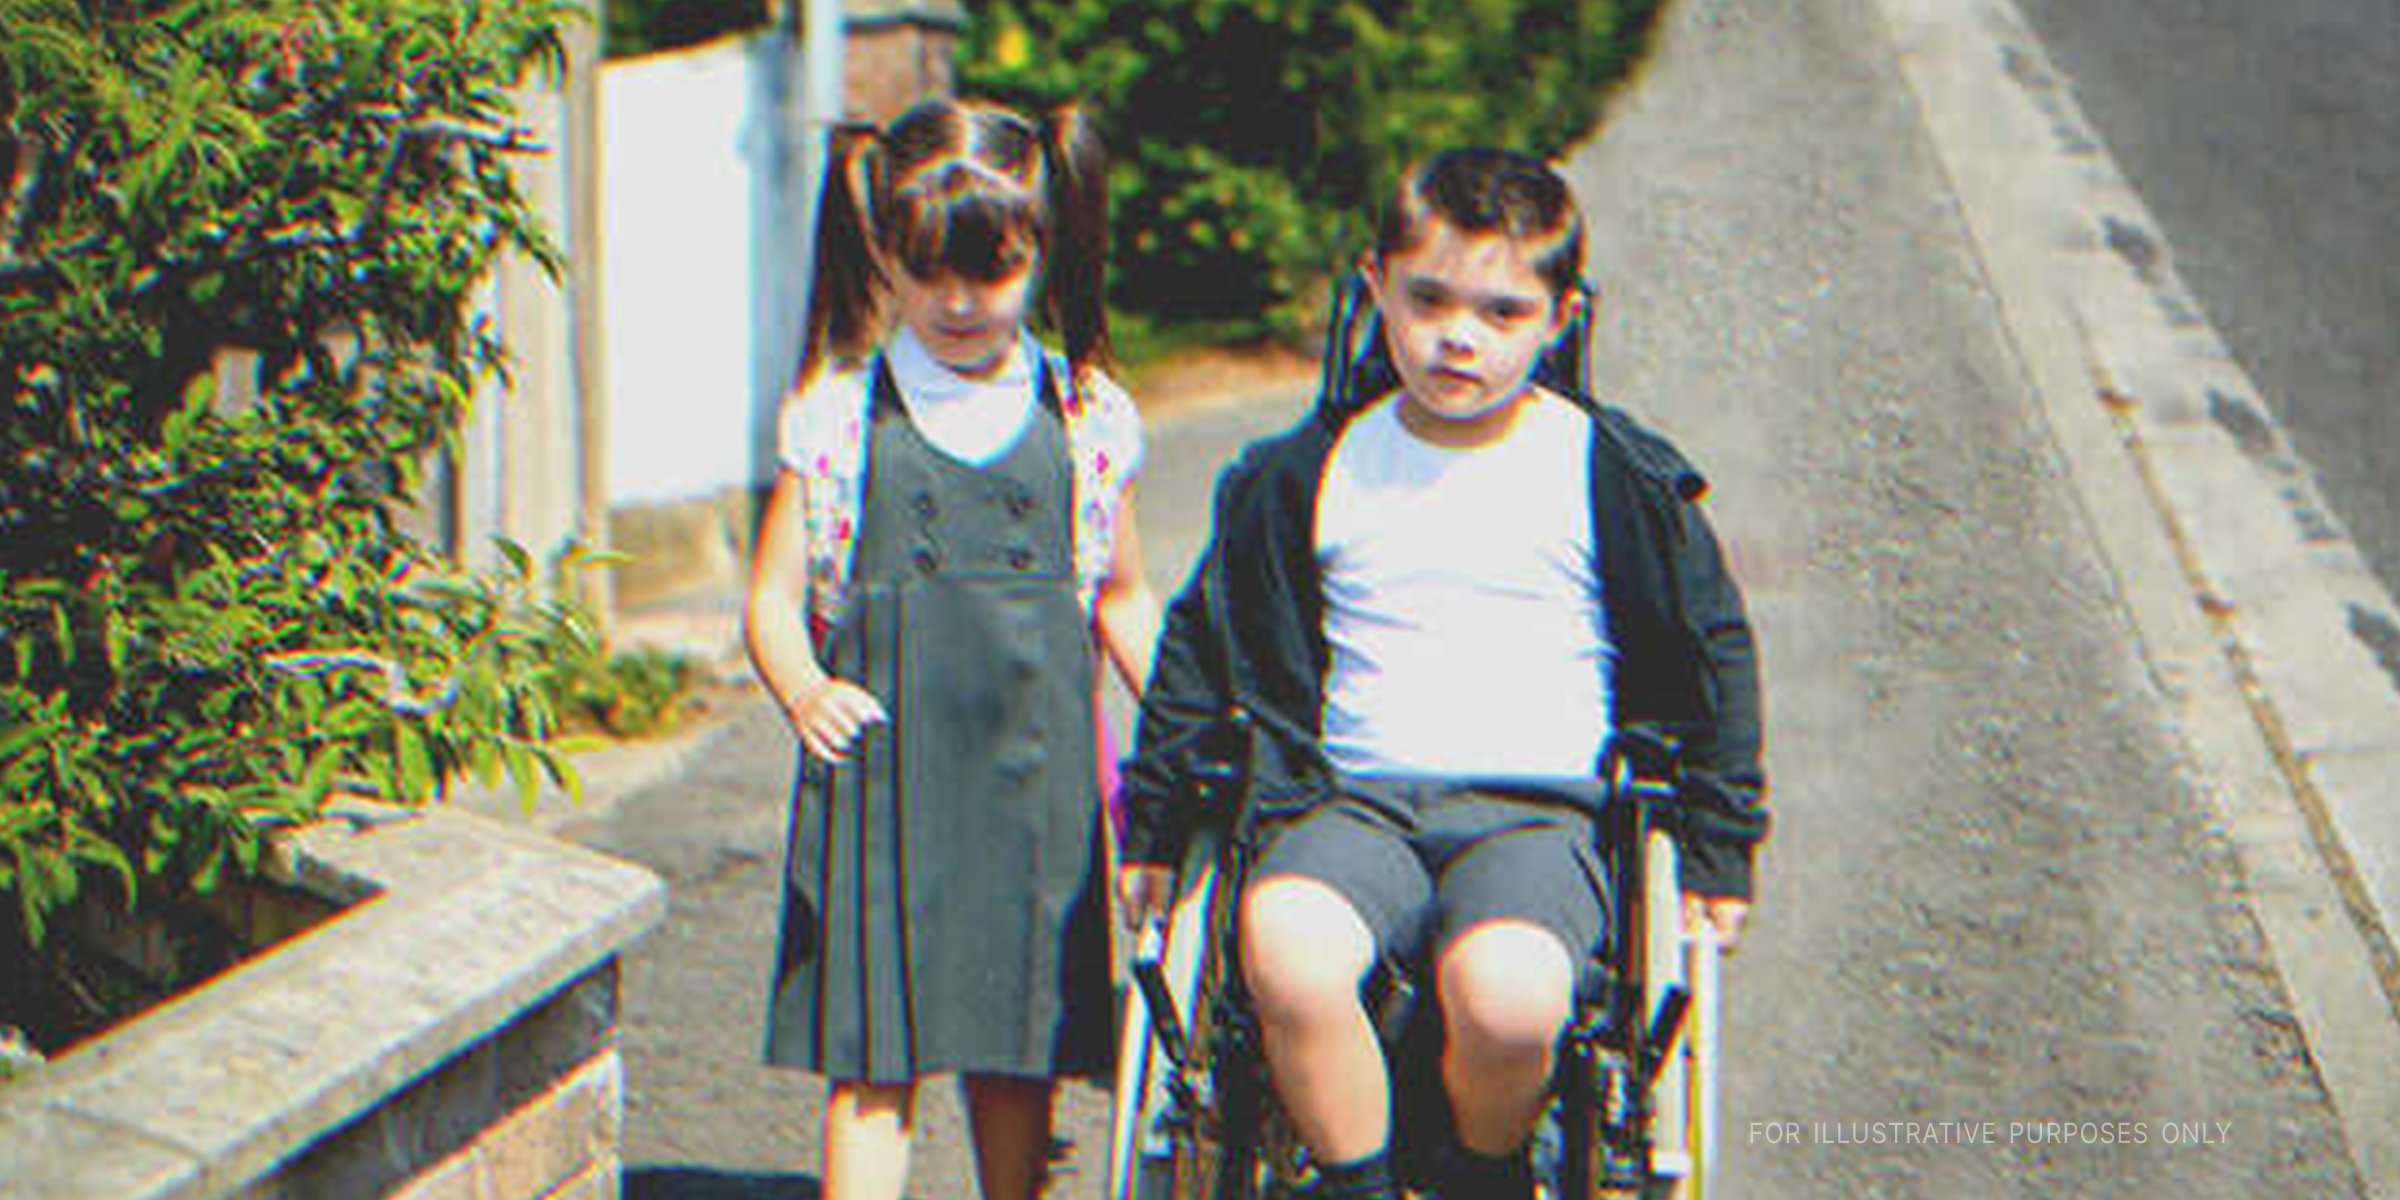 Little boy on wheelchair next to a little girl. | Source: Shutterstock